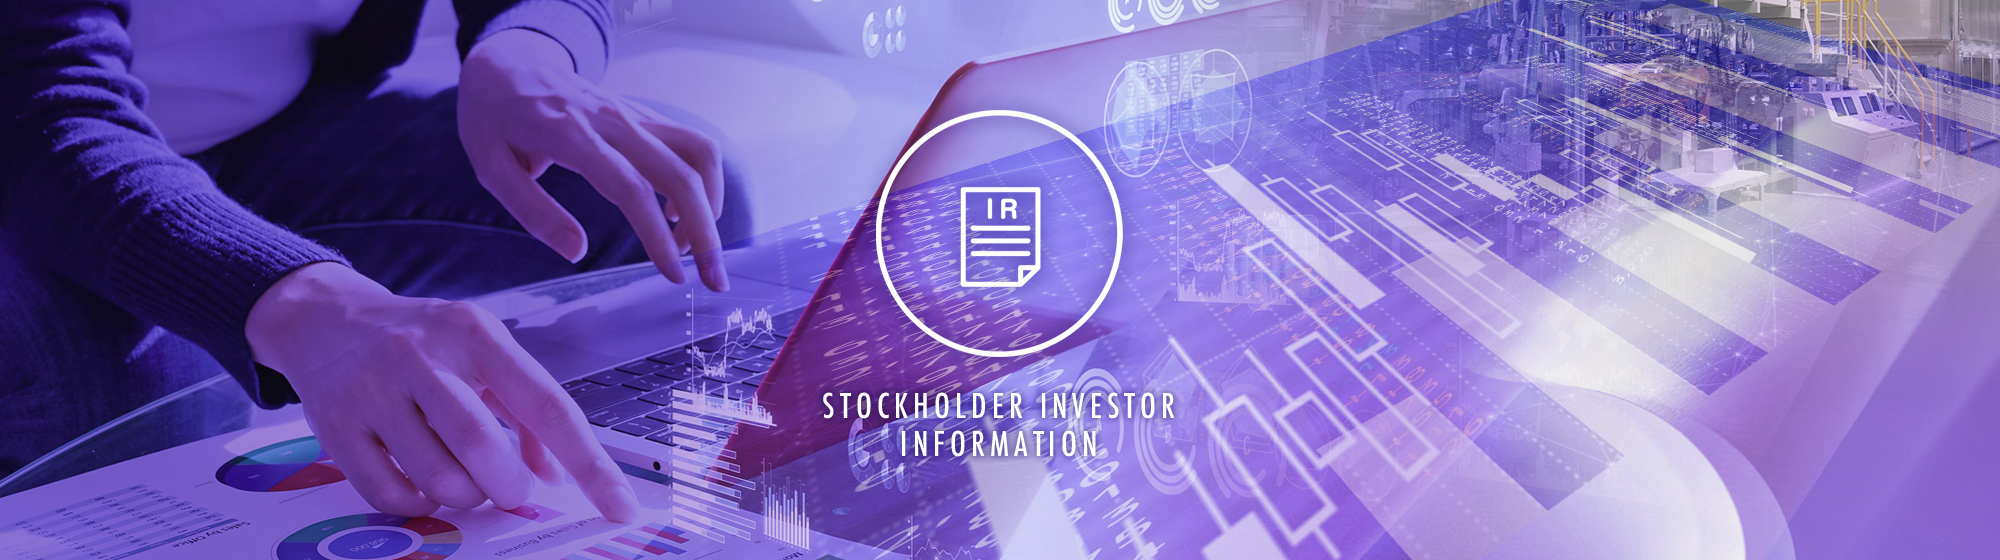 tockholder / investor information